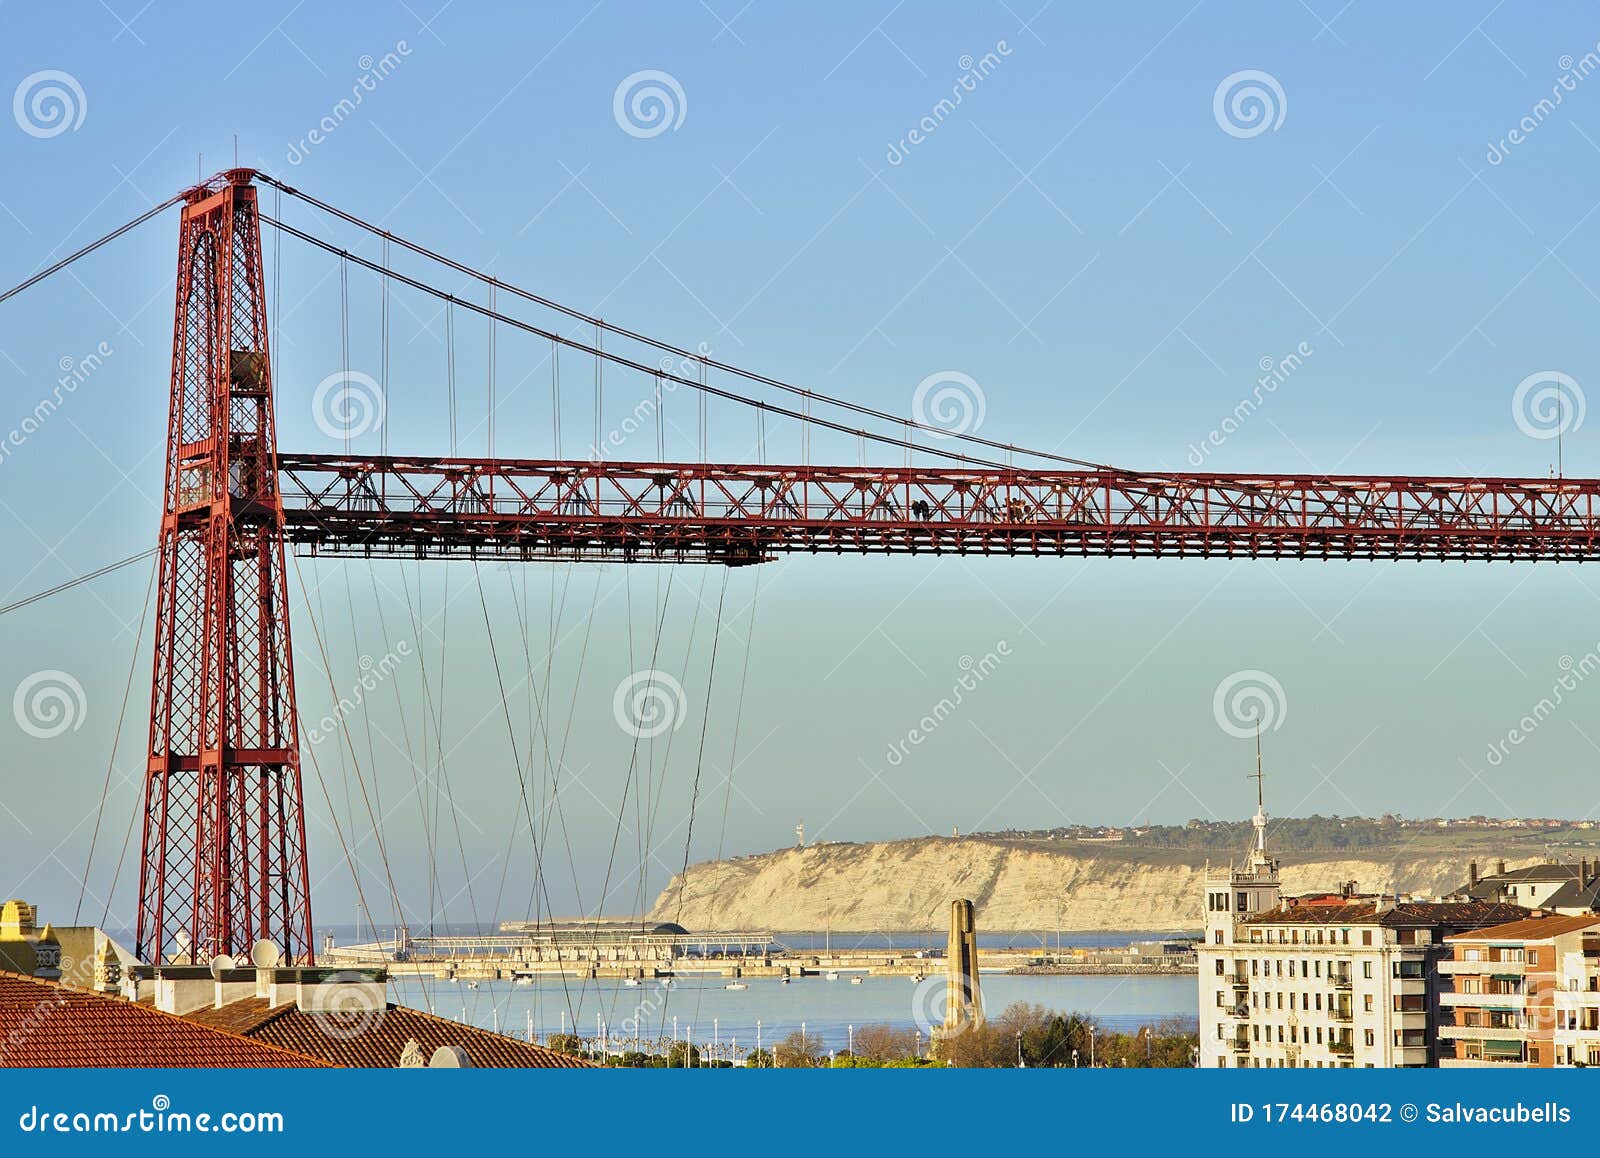 portugalete, pais vasco, 27 de diciembre de 2019. puente colgante entre portugalete y getxo